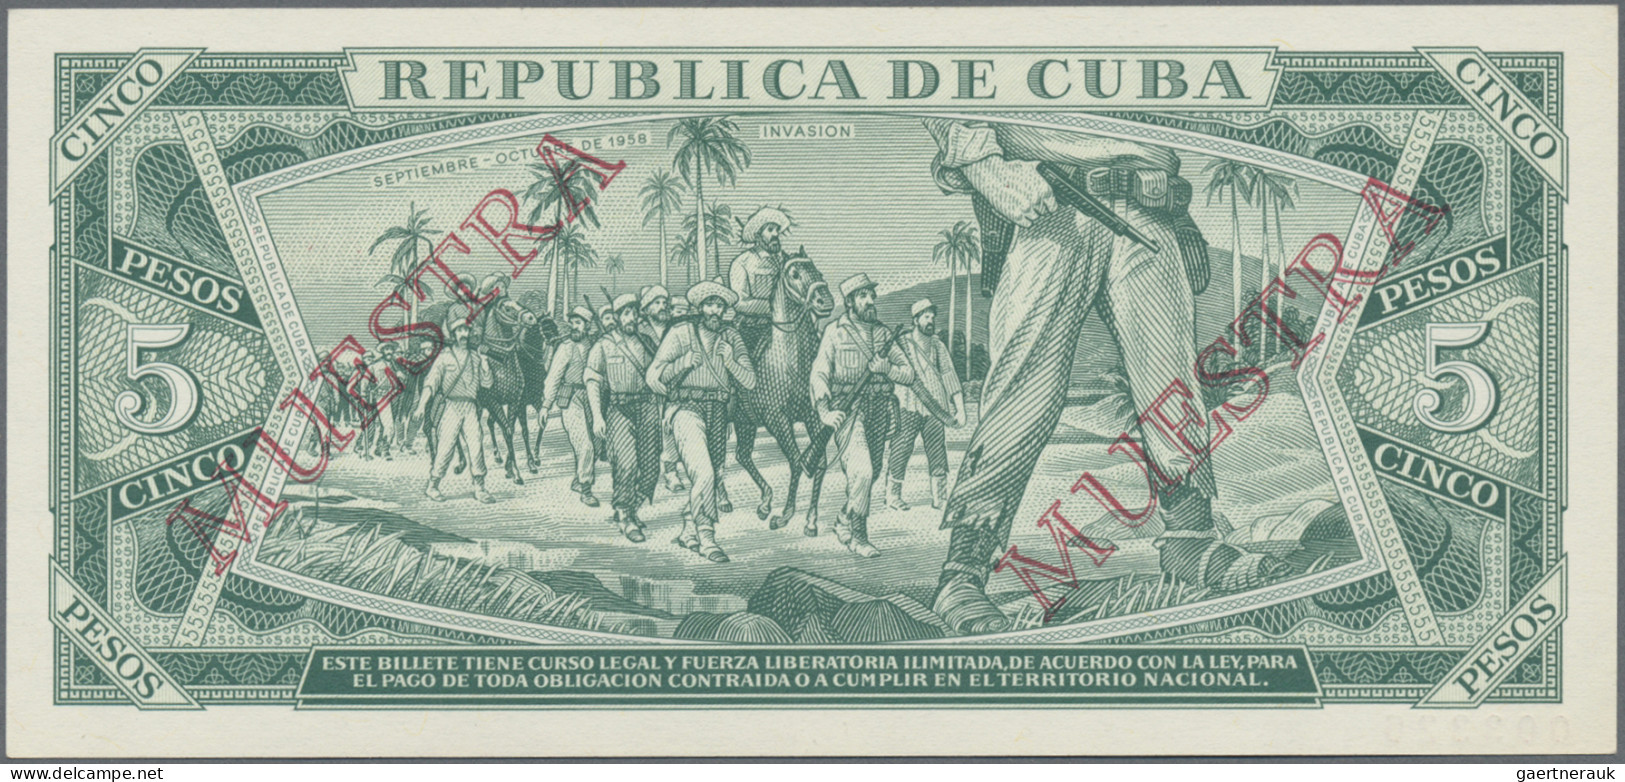 Cuba: Banco Nacional de Cuba, lot with 6 SPECIMEN, 1964-1983 series, with 1, 3,